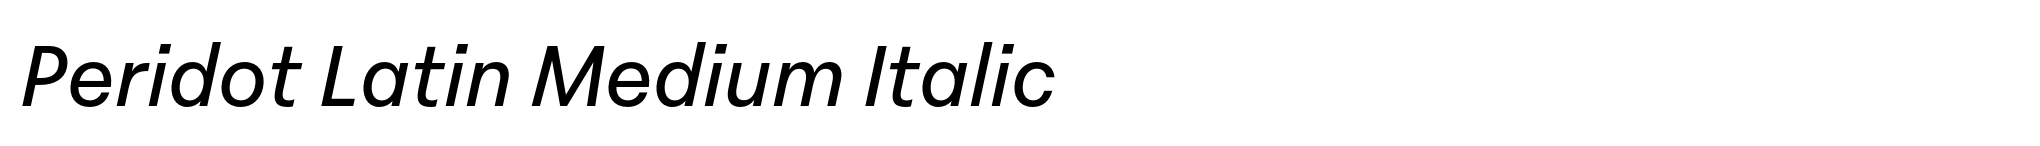 Peridot Latin Medium Italic image